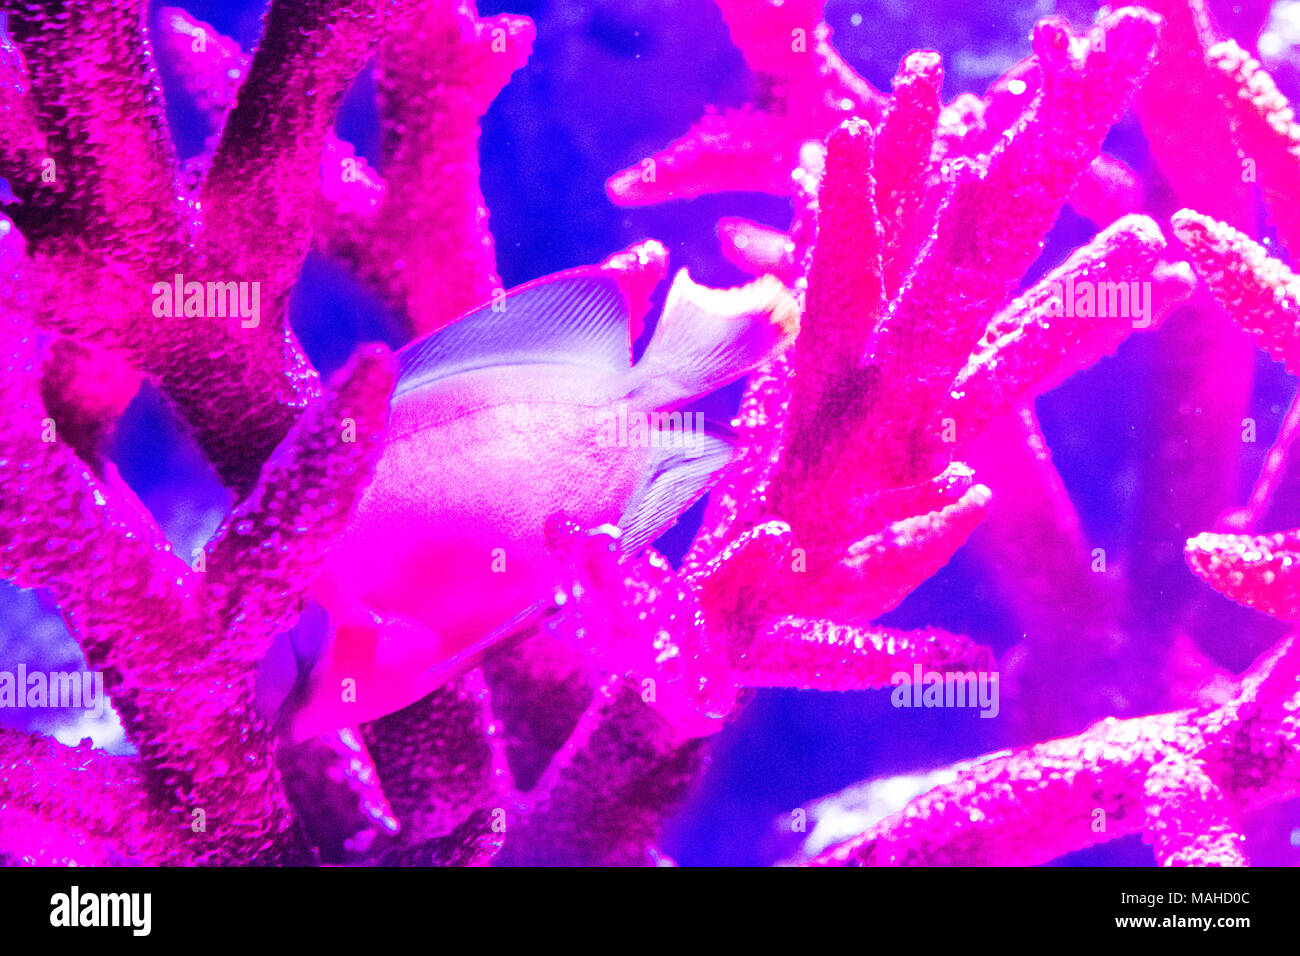 Paysage ,le monde sous-marin avec des poissons des récifs coralliens colorés Banque D'Images